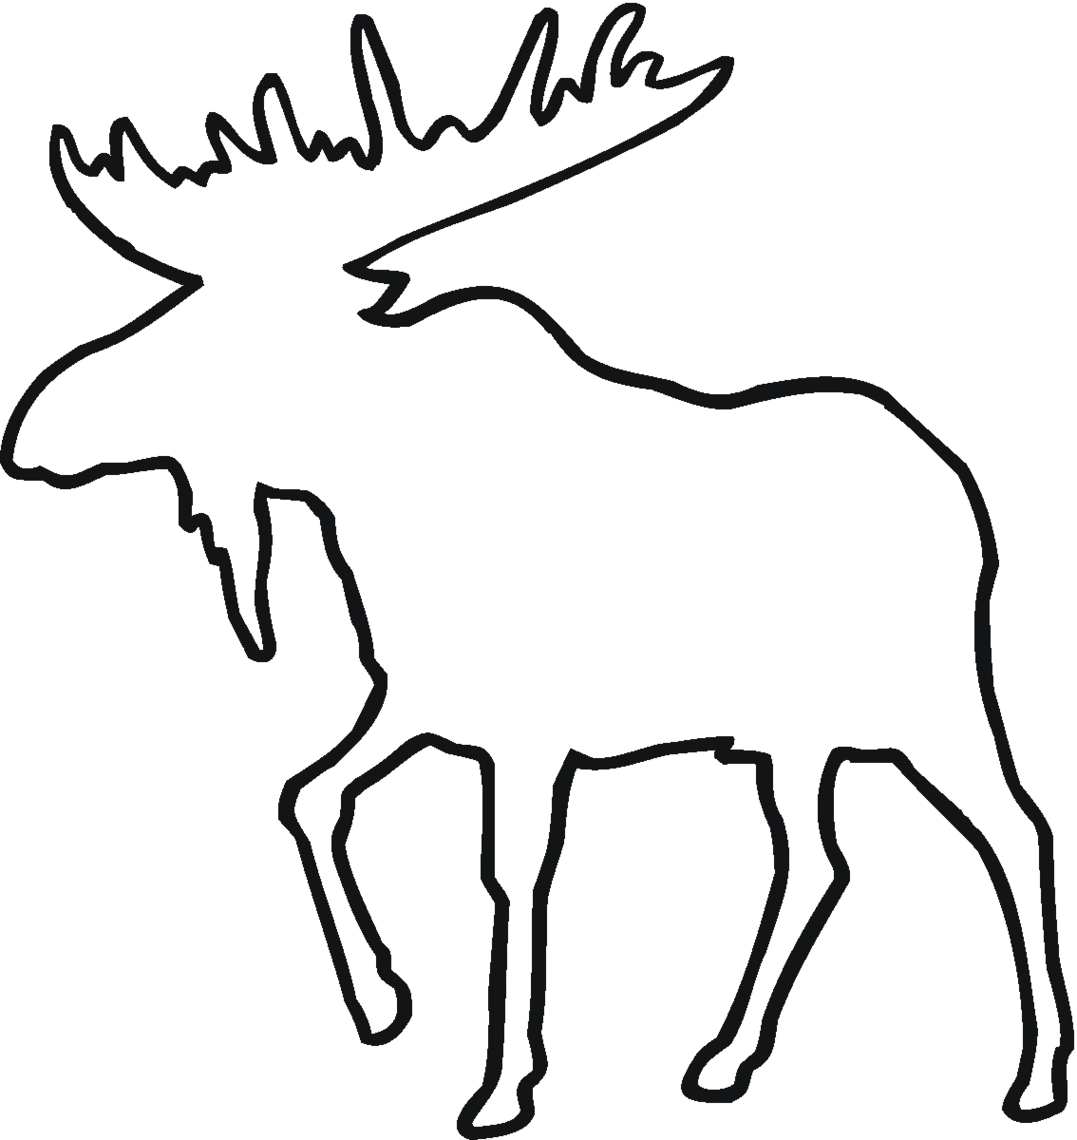 Deer line drawing.